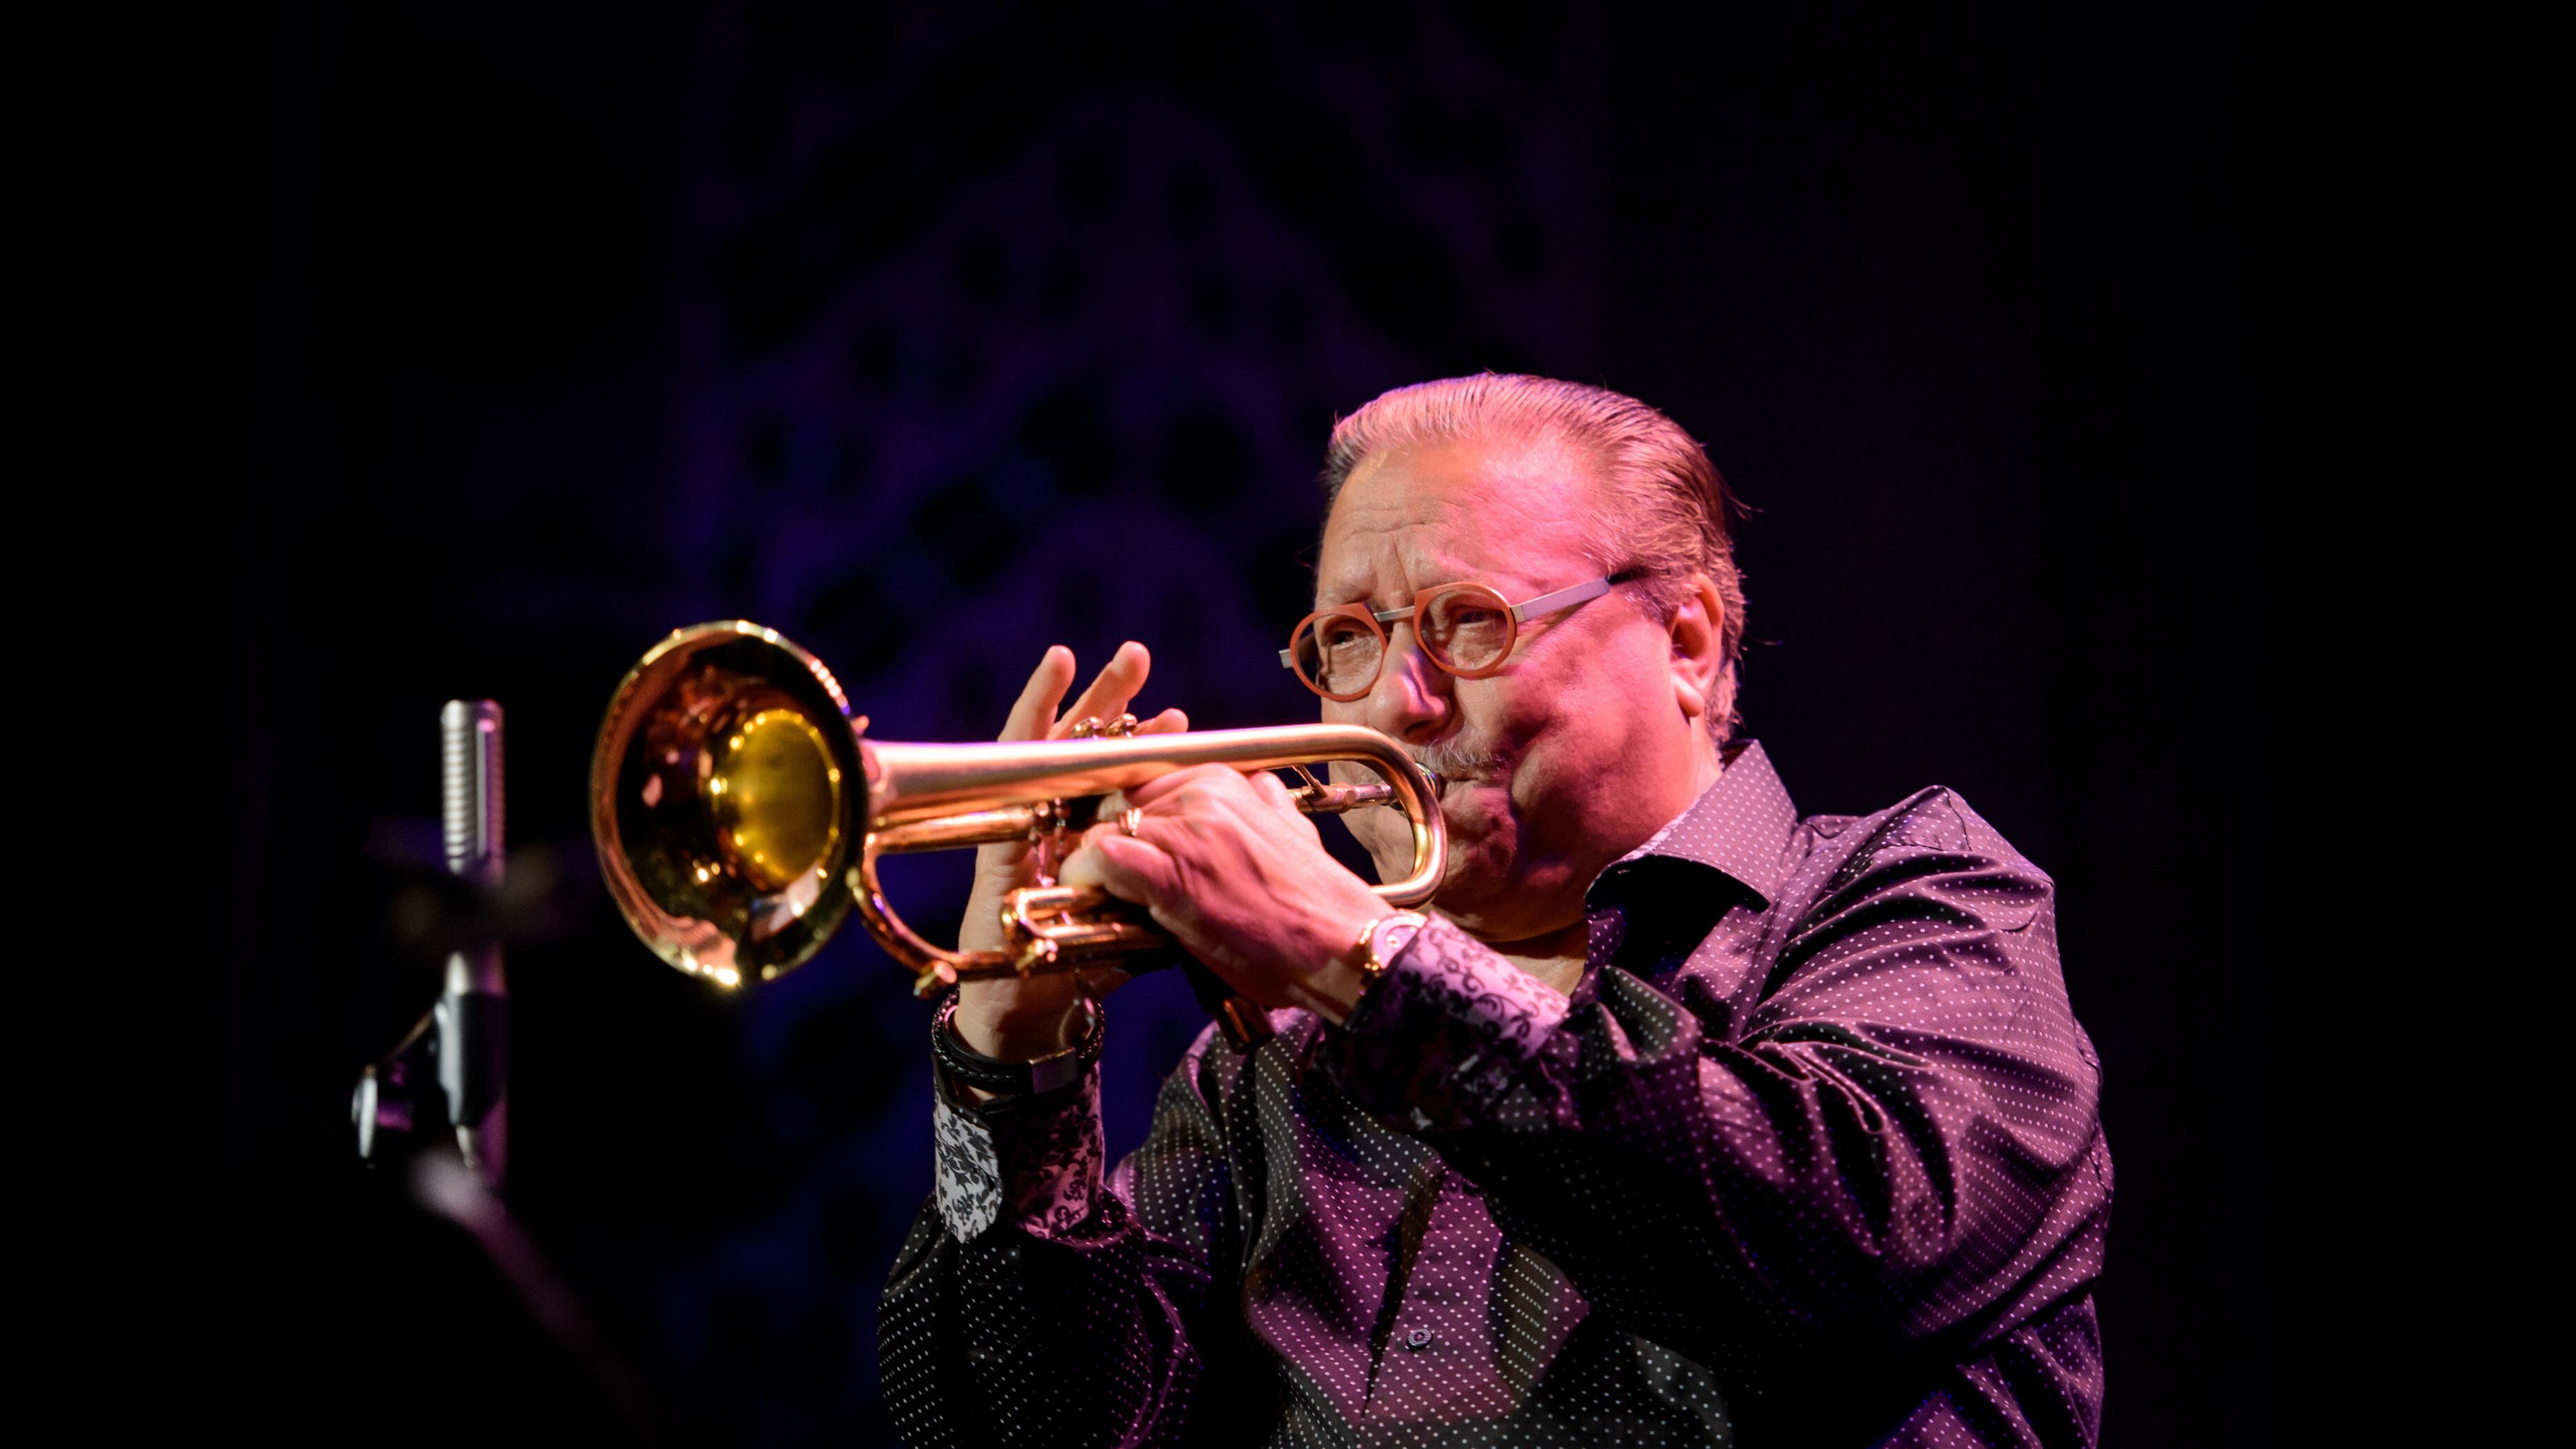 El músico del jazz Arturo Sandoval nació y creció en La Habana, Cuba. Desde entonces, ha sido galardonado con 10 Grammys (Foto: Lonnie Timmons III)